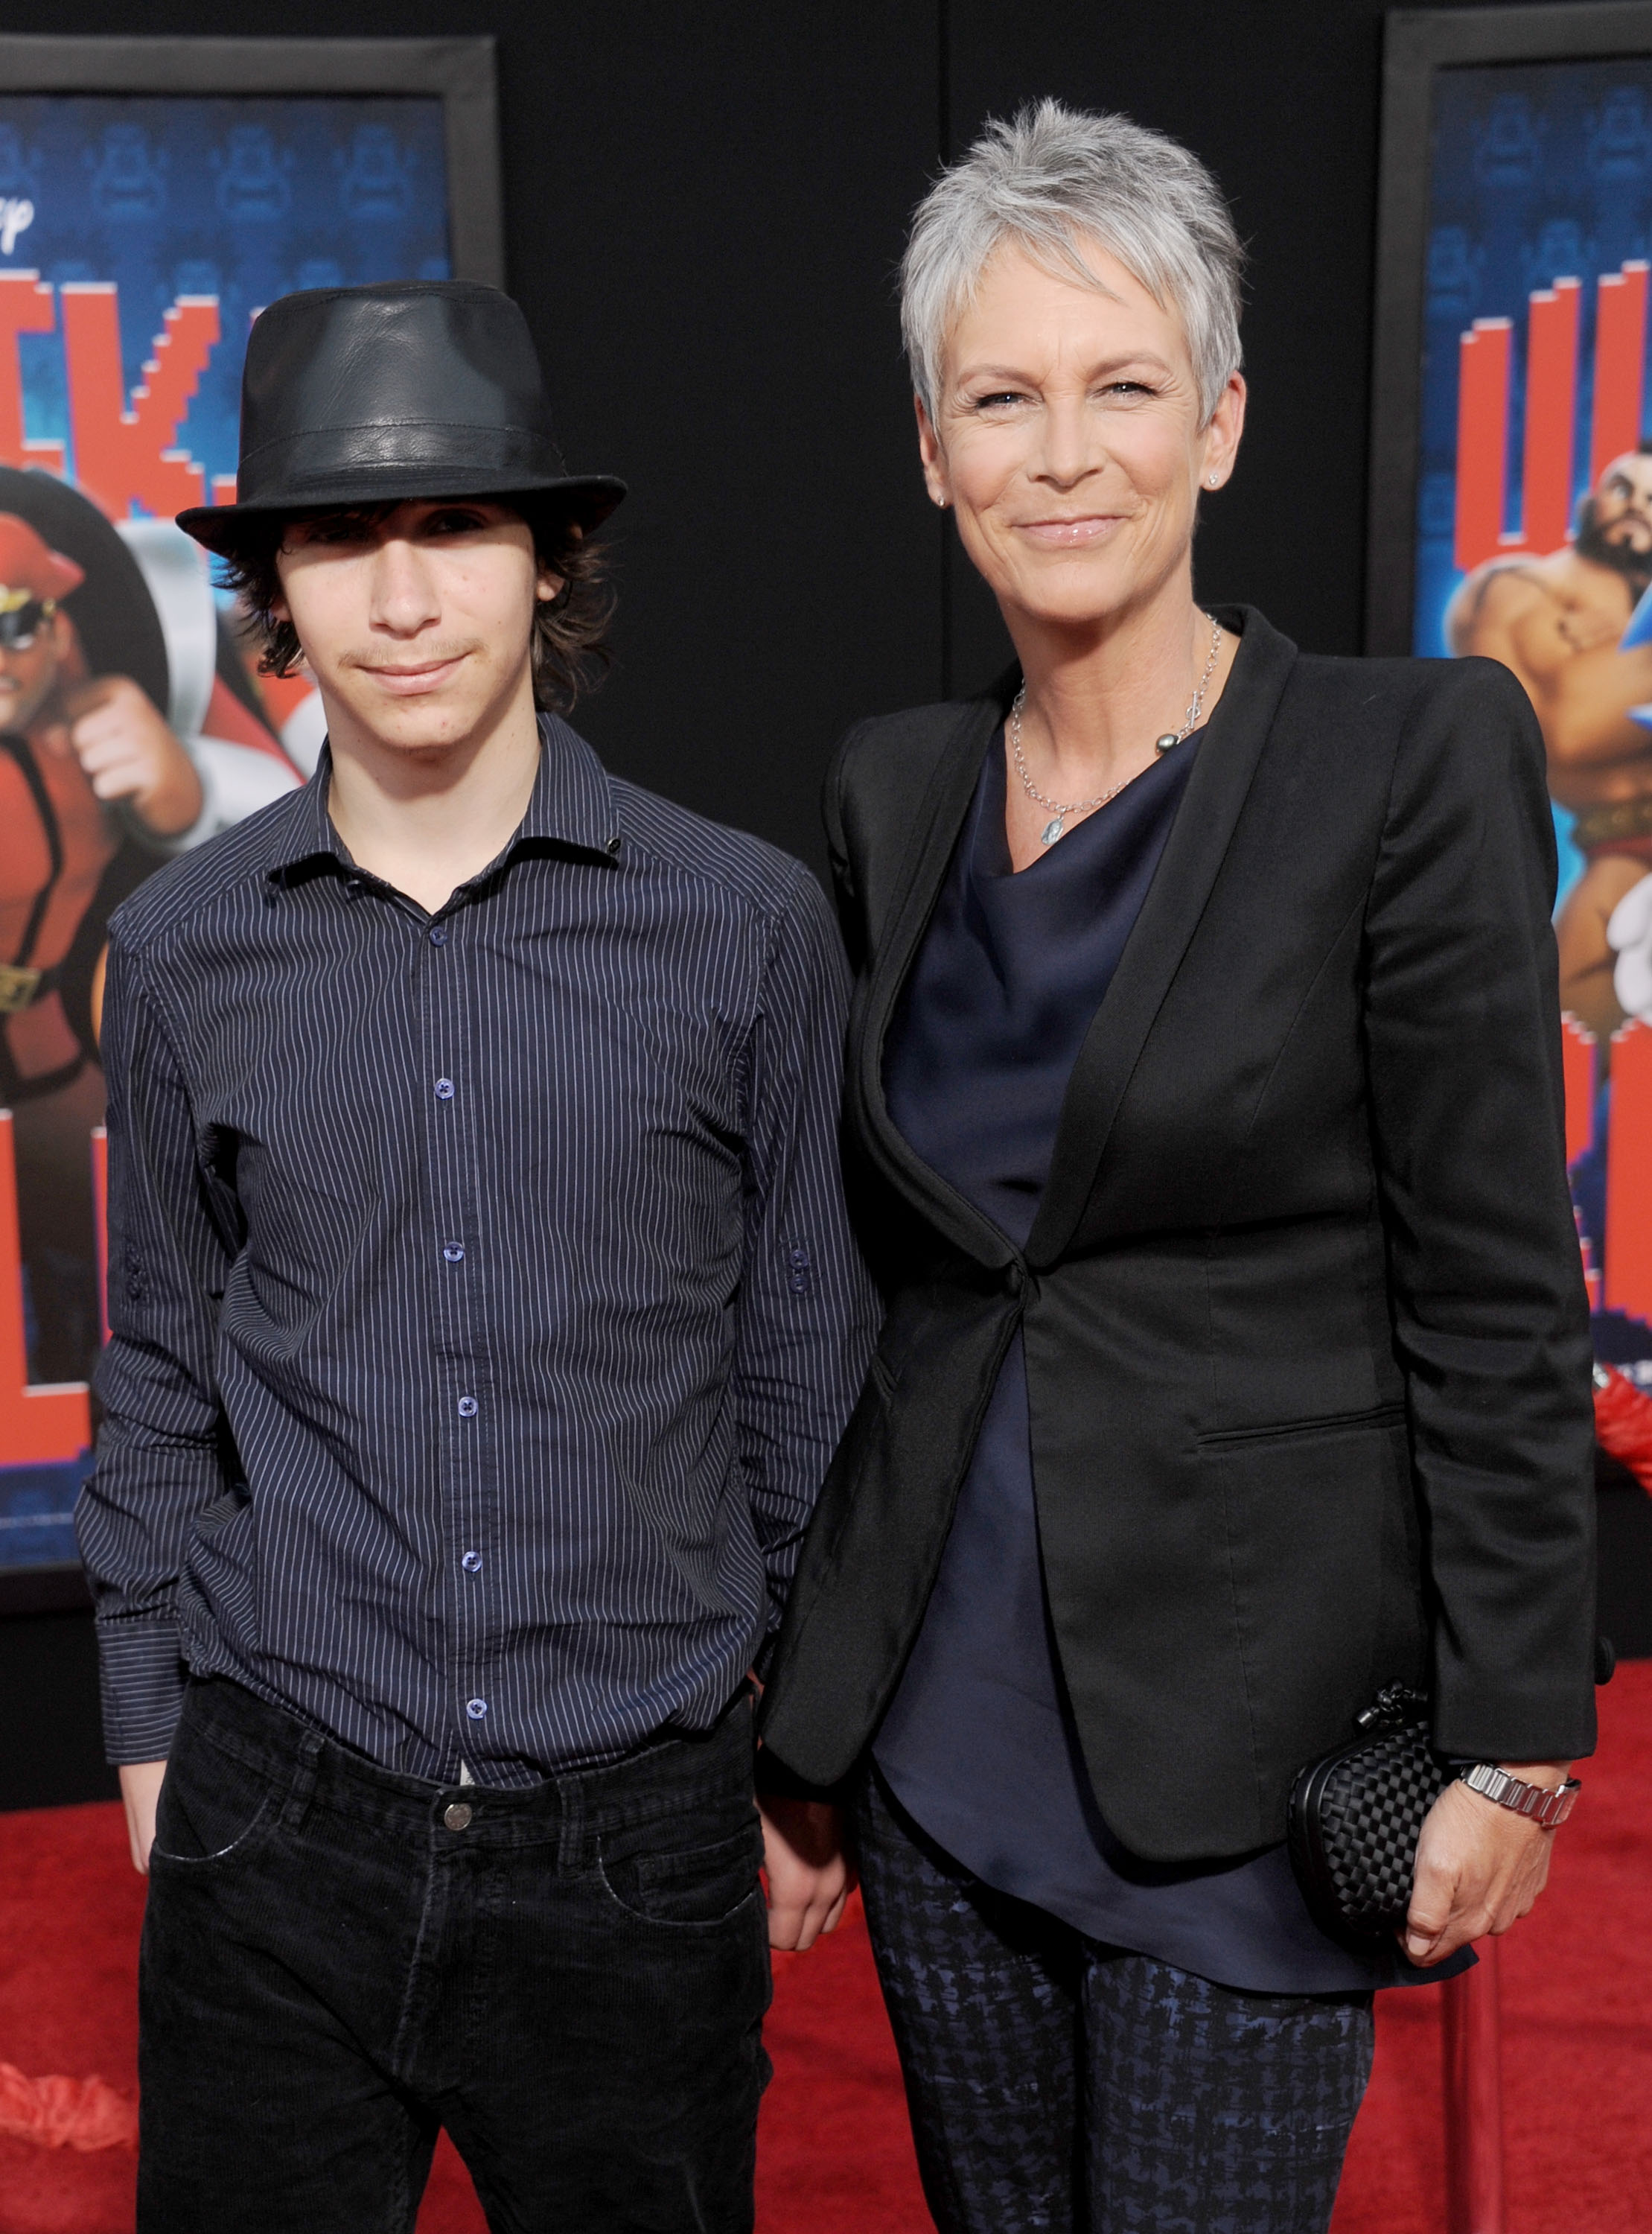 Jamie Lee Curtis et son fils, avant sa transition, arrivent à la première de "Wreck-It Ralph" à Los Angeles, au théâtre El Capitan, le 29 octobre 2012, à Hollywood, en Californie | Source : Getty Images